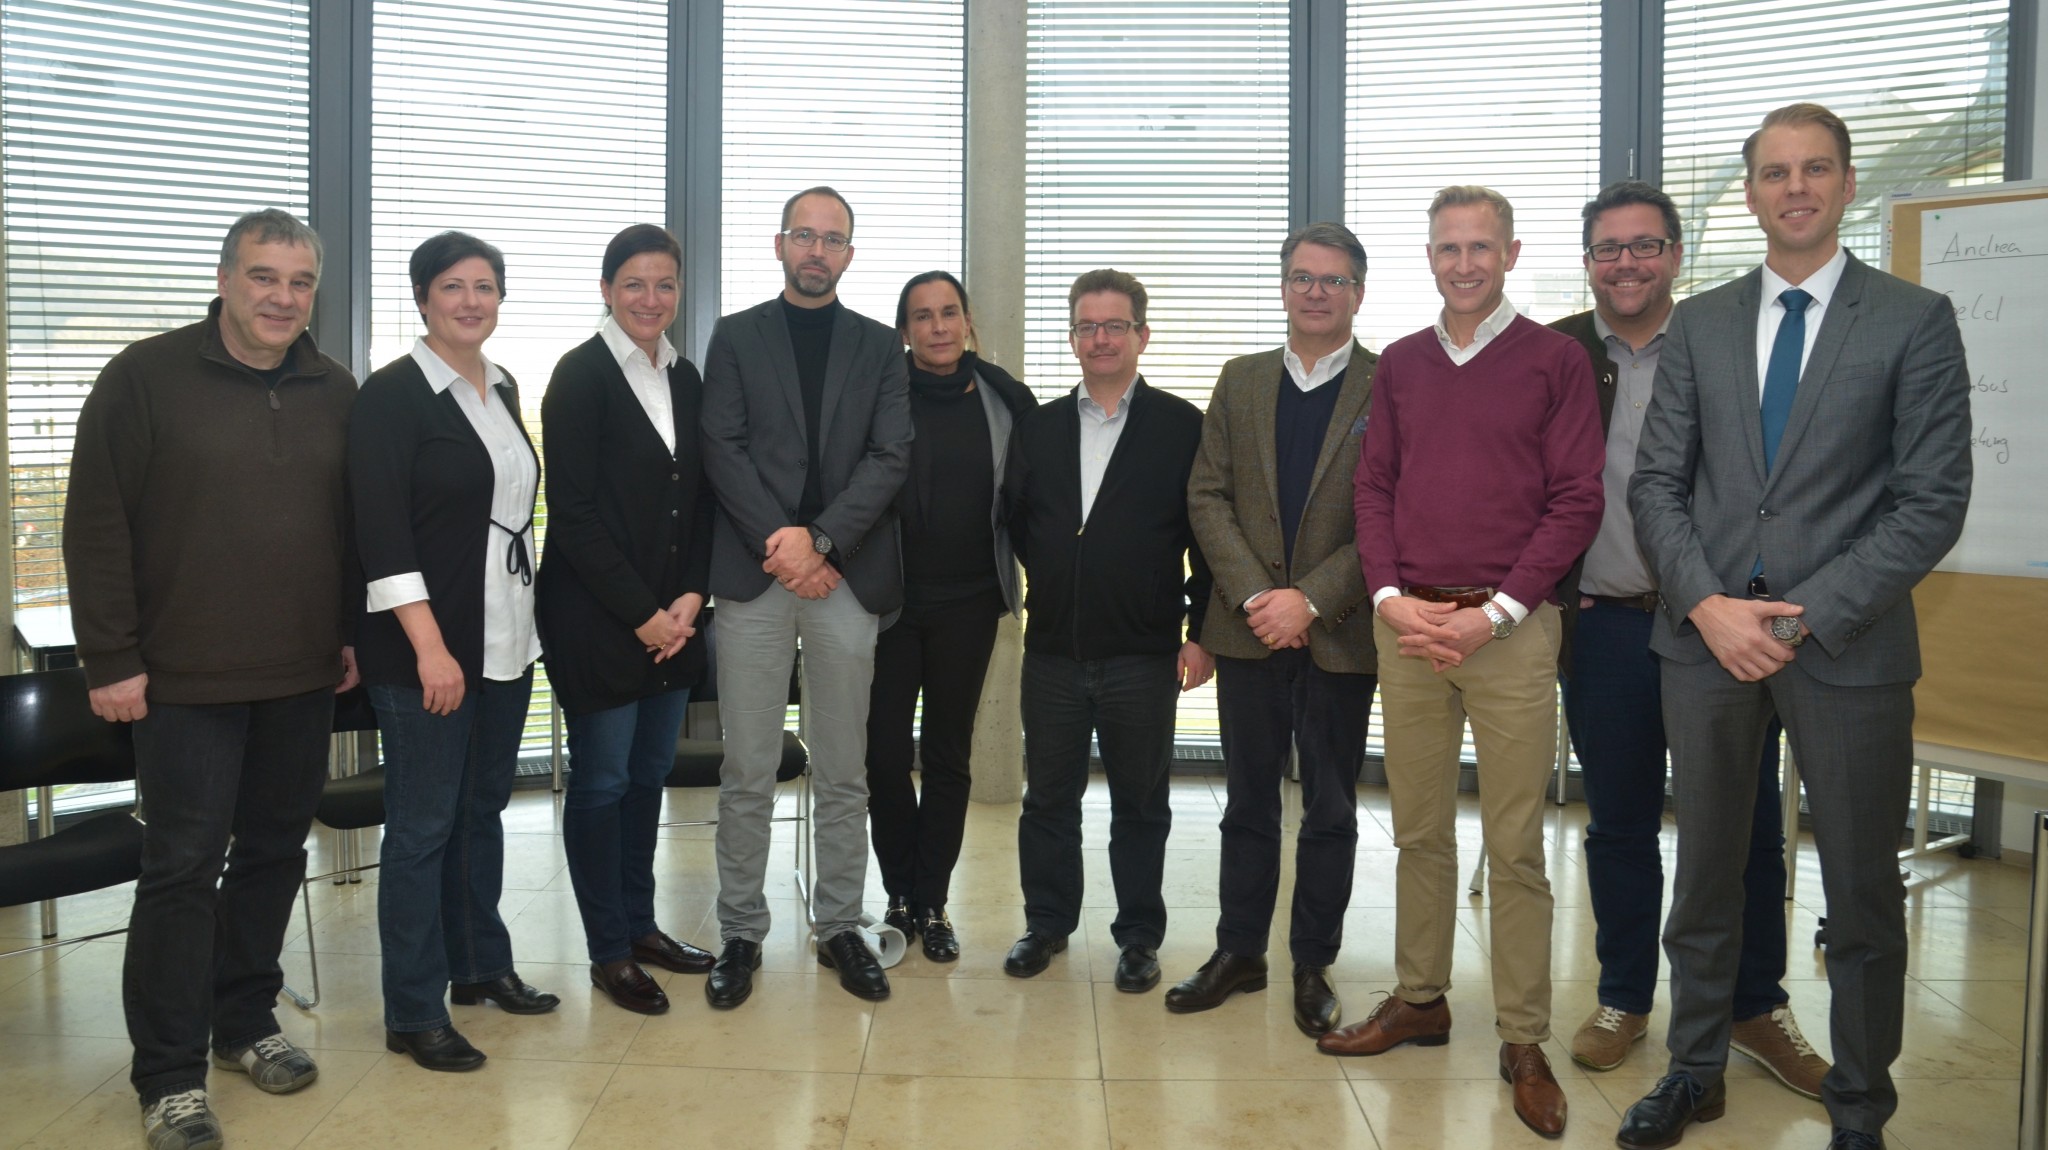 Auf dem Foto ist Ulrich Schneider, IHK-Geschäftsführer Ausbildung (ganz rechts) mit den frischgebackenen Wirtschaftsmediatoren zu sehen. Quelle: IHK Trier